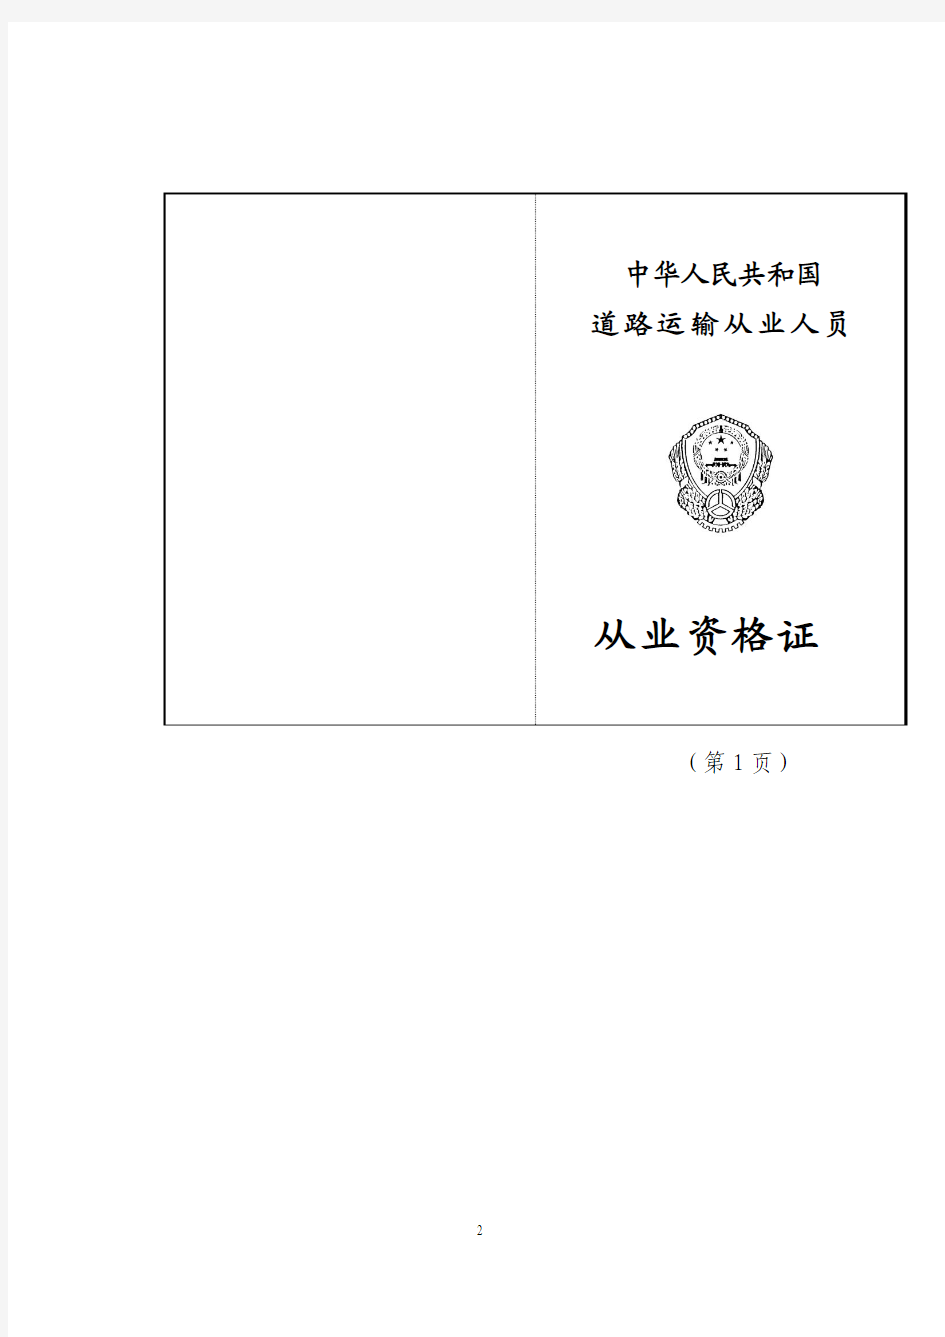 中华人民共和国道路运输从业人员从业资格证式样